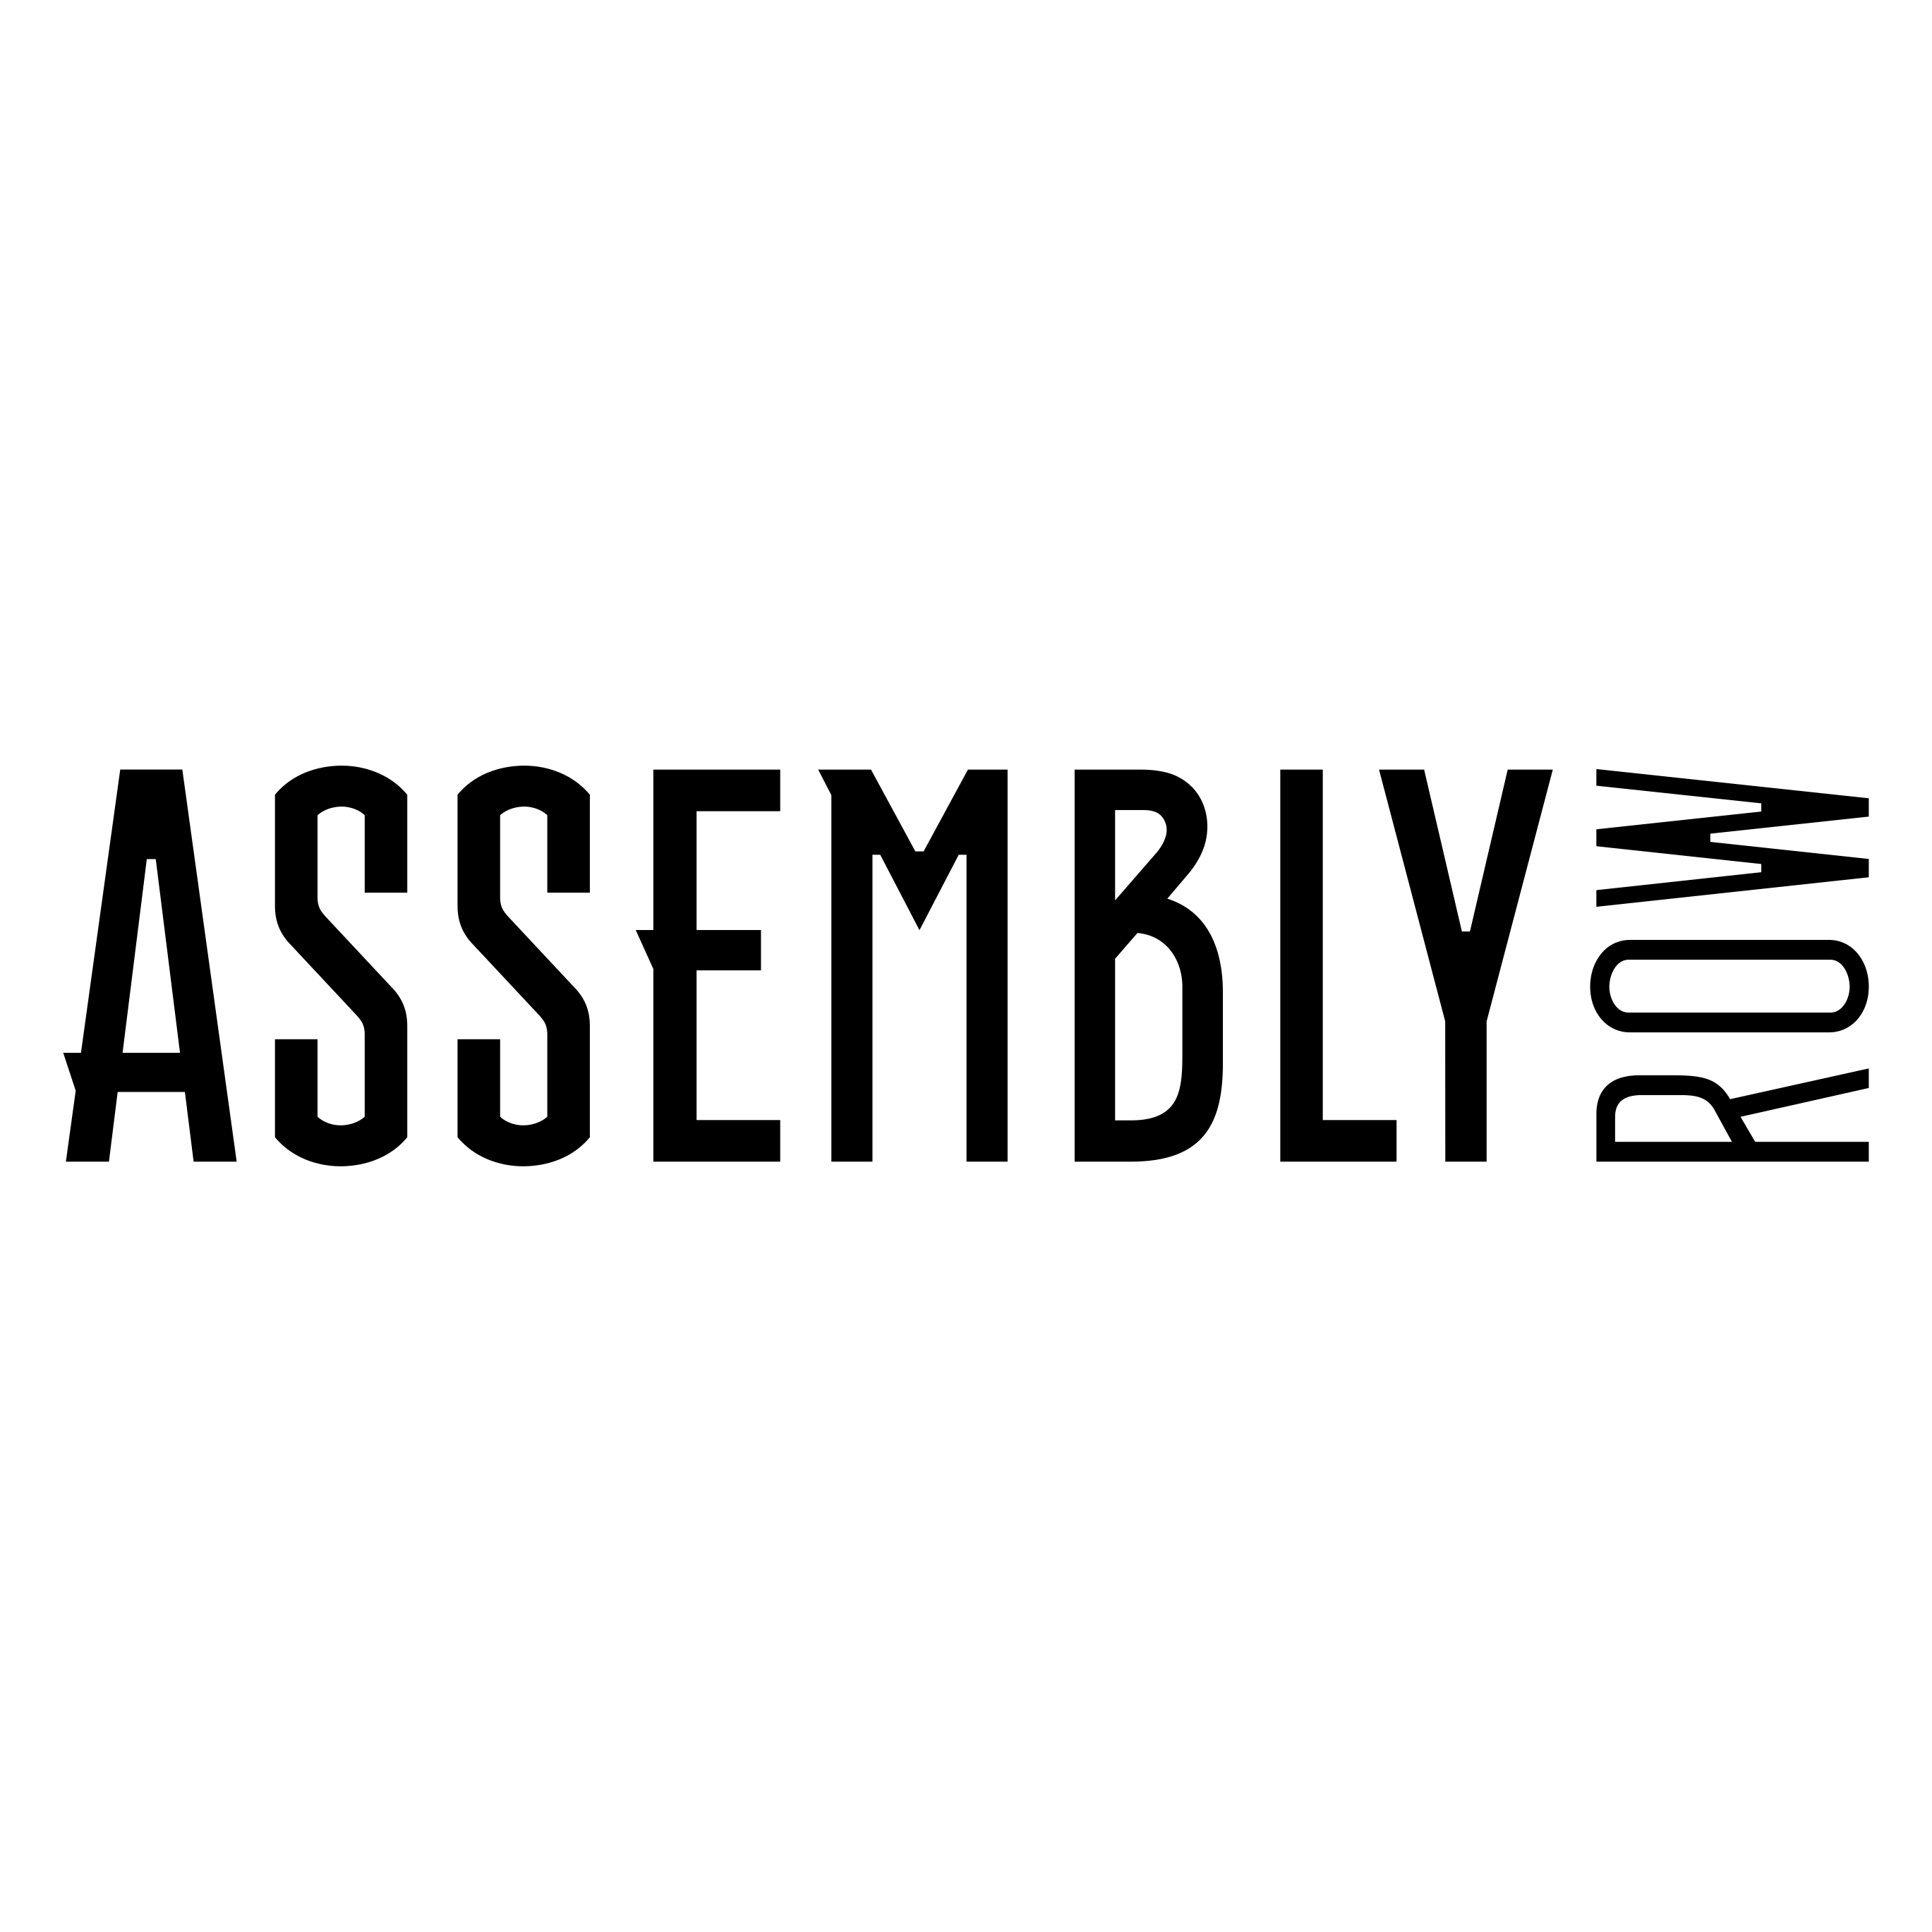 Assembly Row